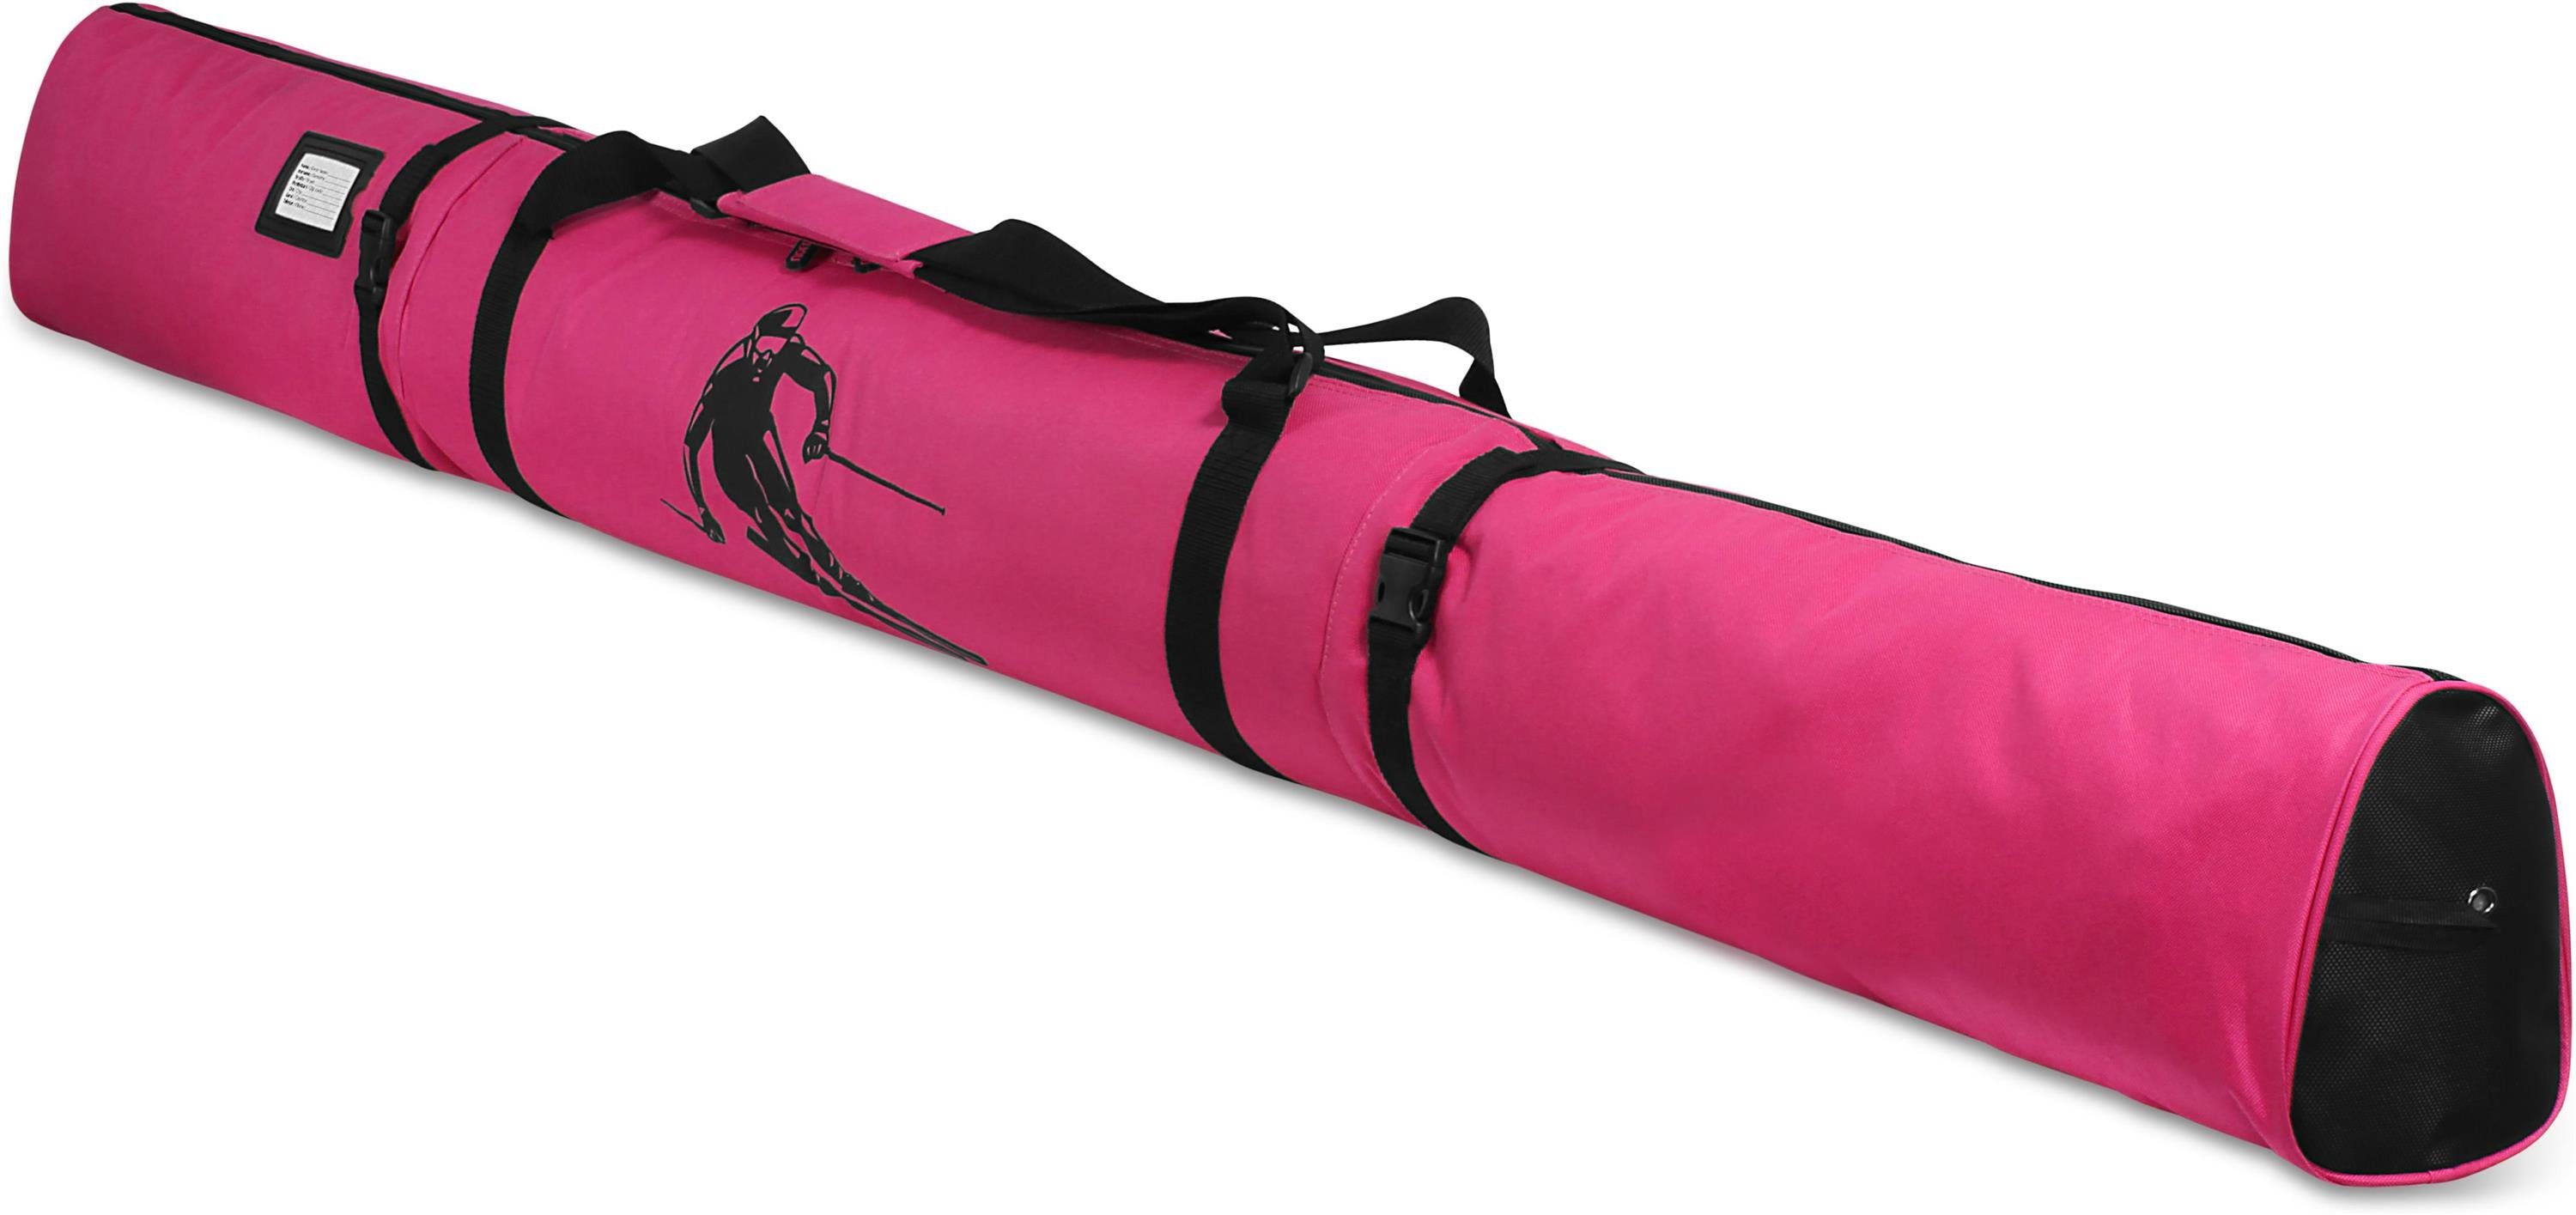 Skitasche und Skisack Pink Aufbewahrungstasche Sporttasche Skitasche normani Run Skistöcke Alpine - für Skier Transporttasche 200,